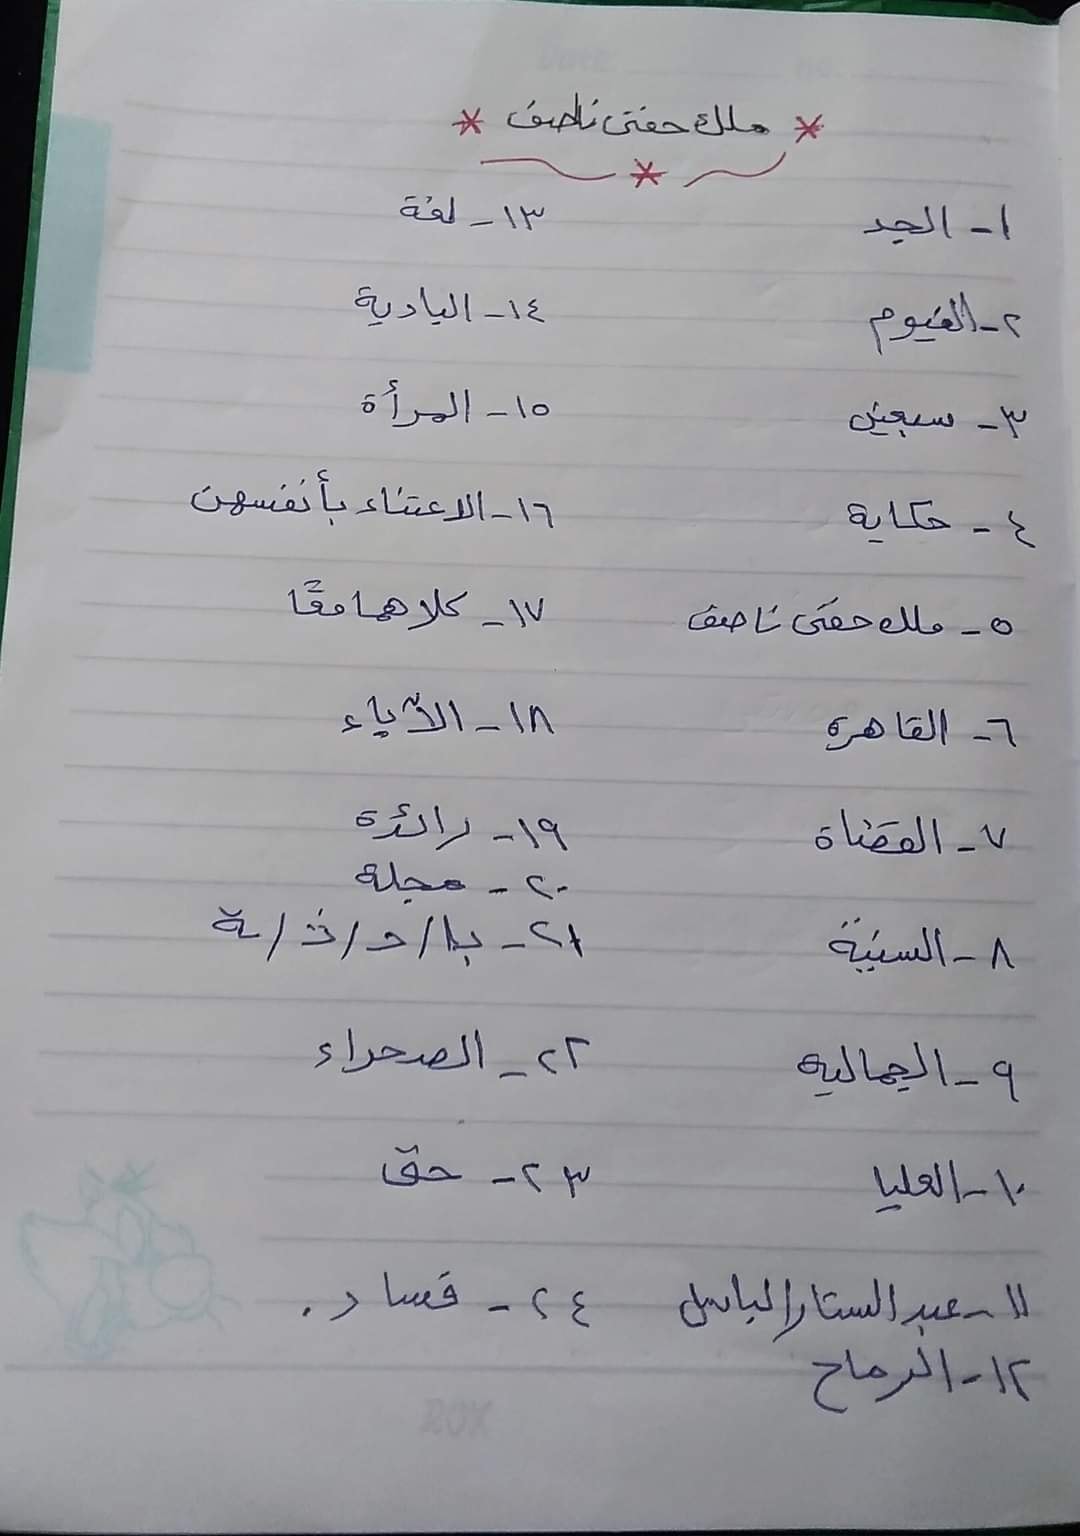  مراجعة منهج شهر مارس  لغة عربية (اختيار من متعدد) بالاجابات للصف الخامس الابتدائى الترم الثانى 2021 13